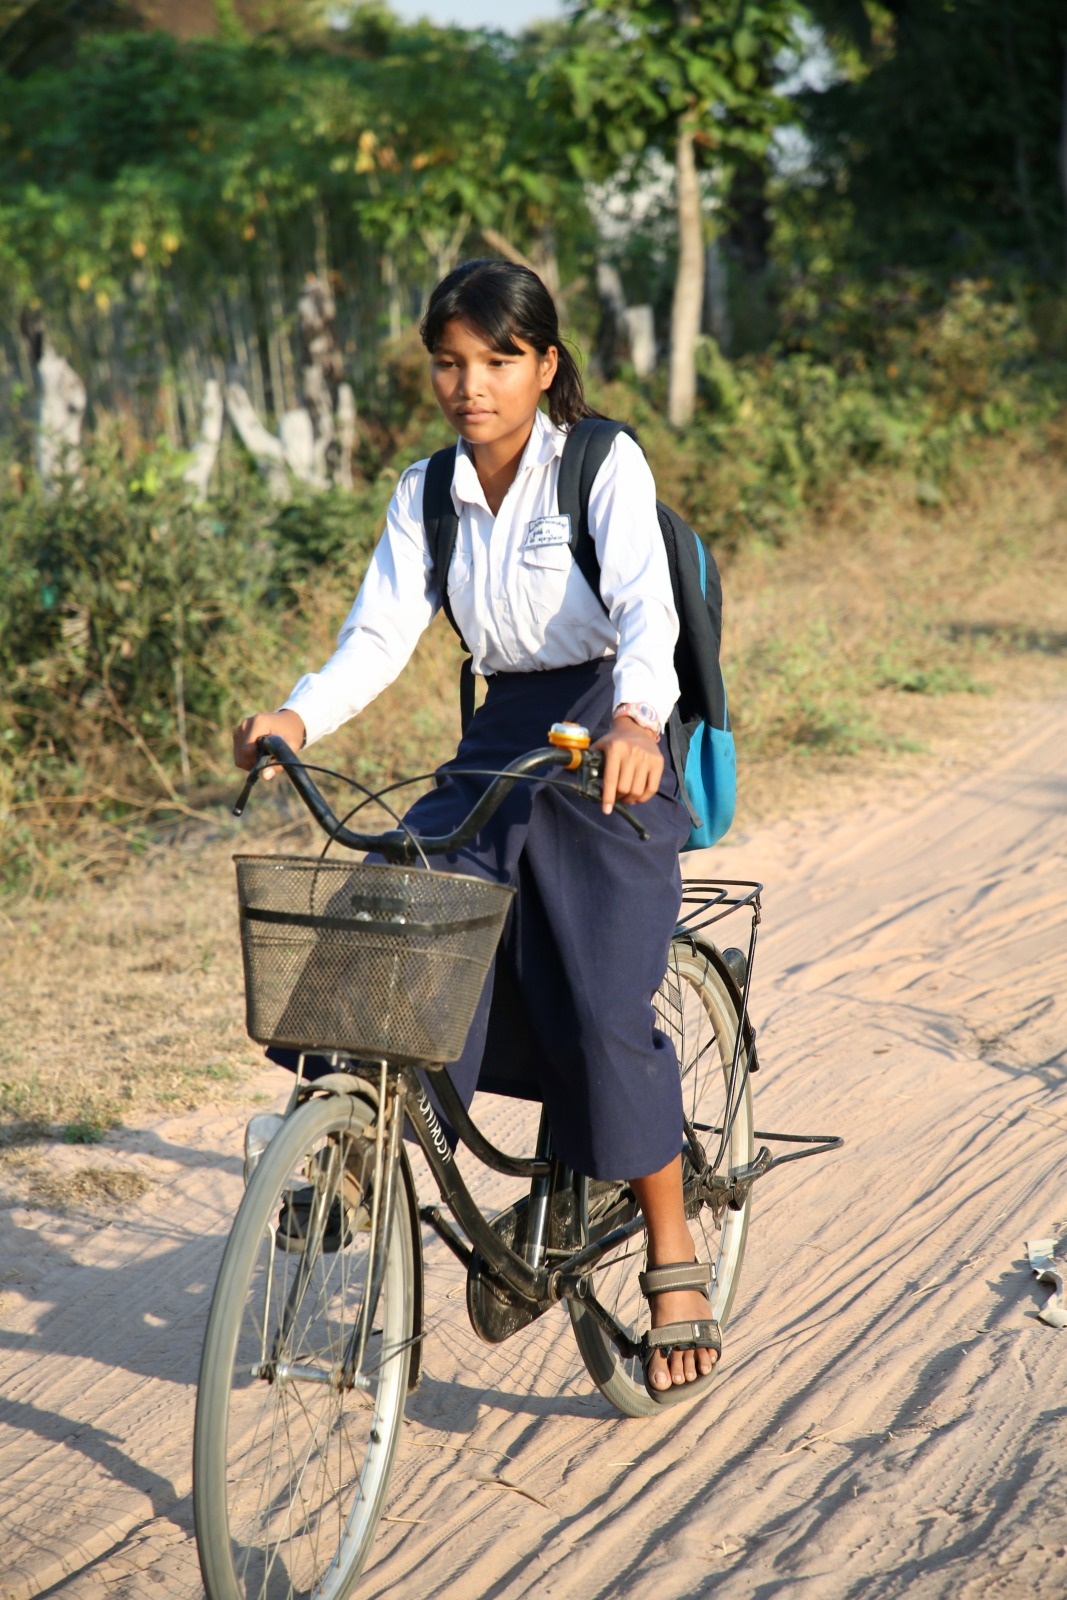 Une jeune fille appareillée avec une prothèse fait du vélo sur une route en terre